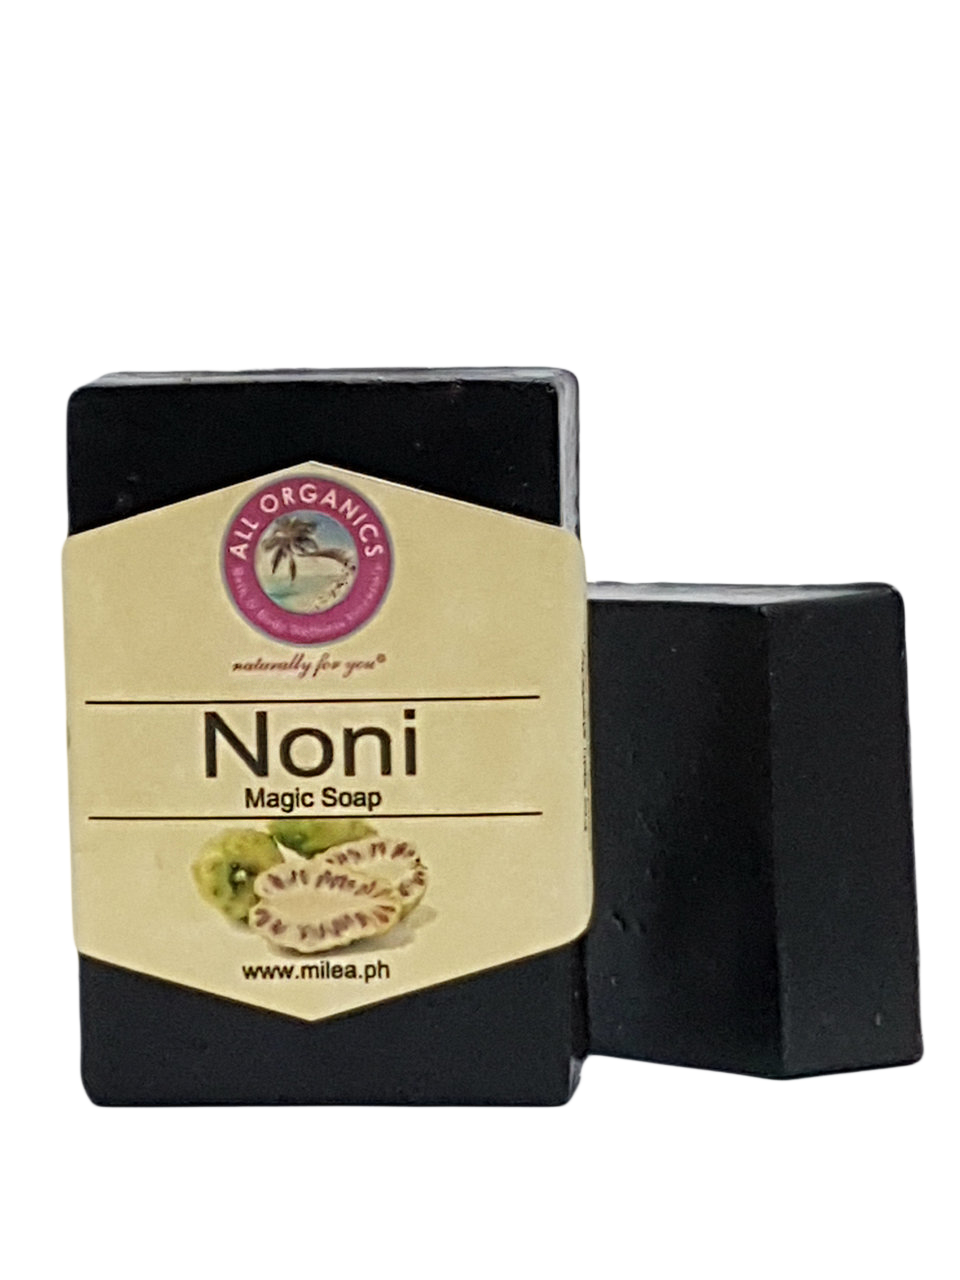 Noni Magic Soap - Milea All Organics - Philippines